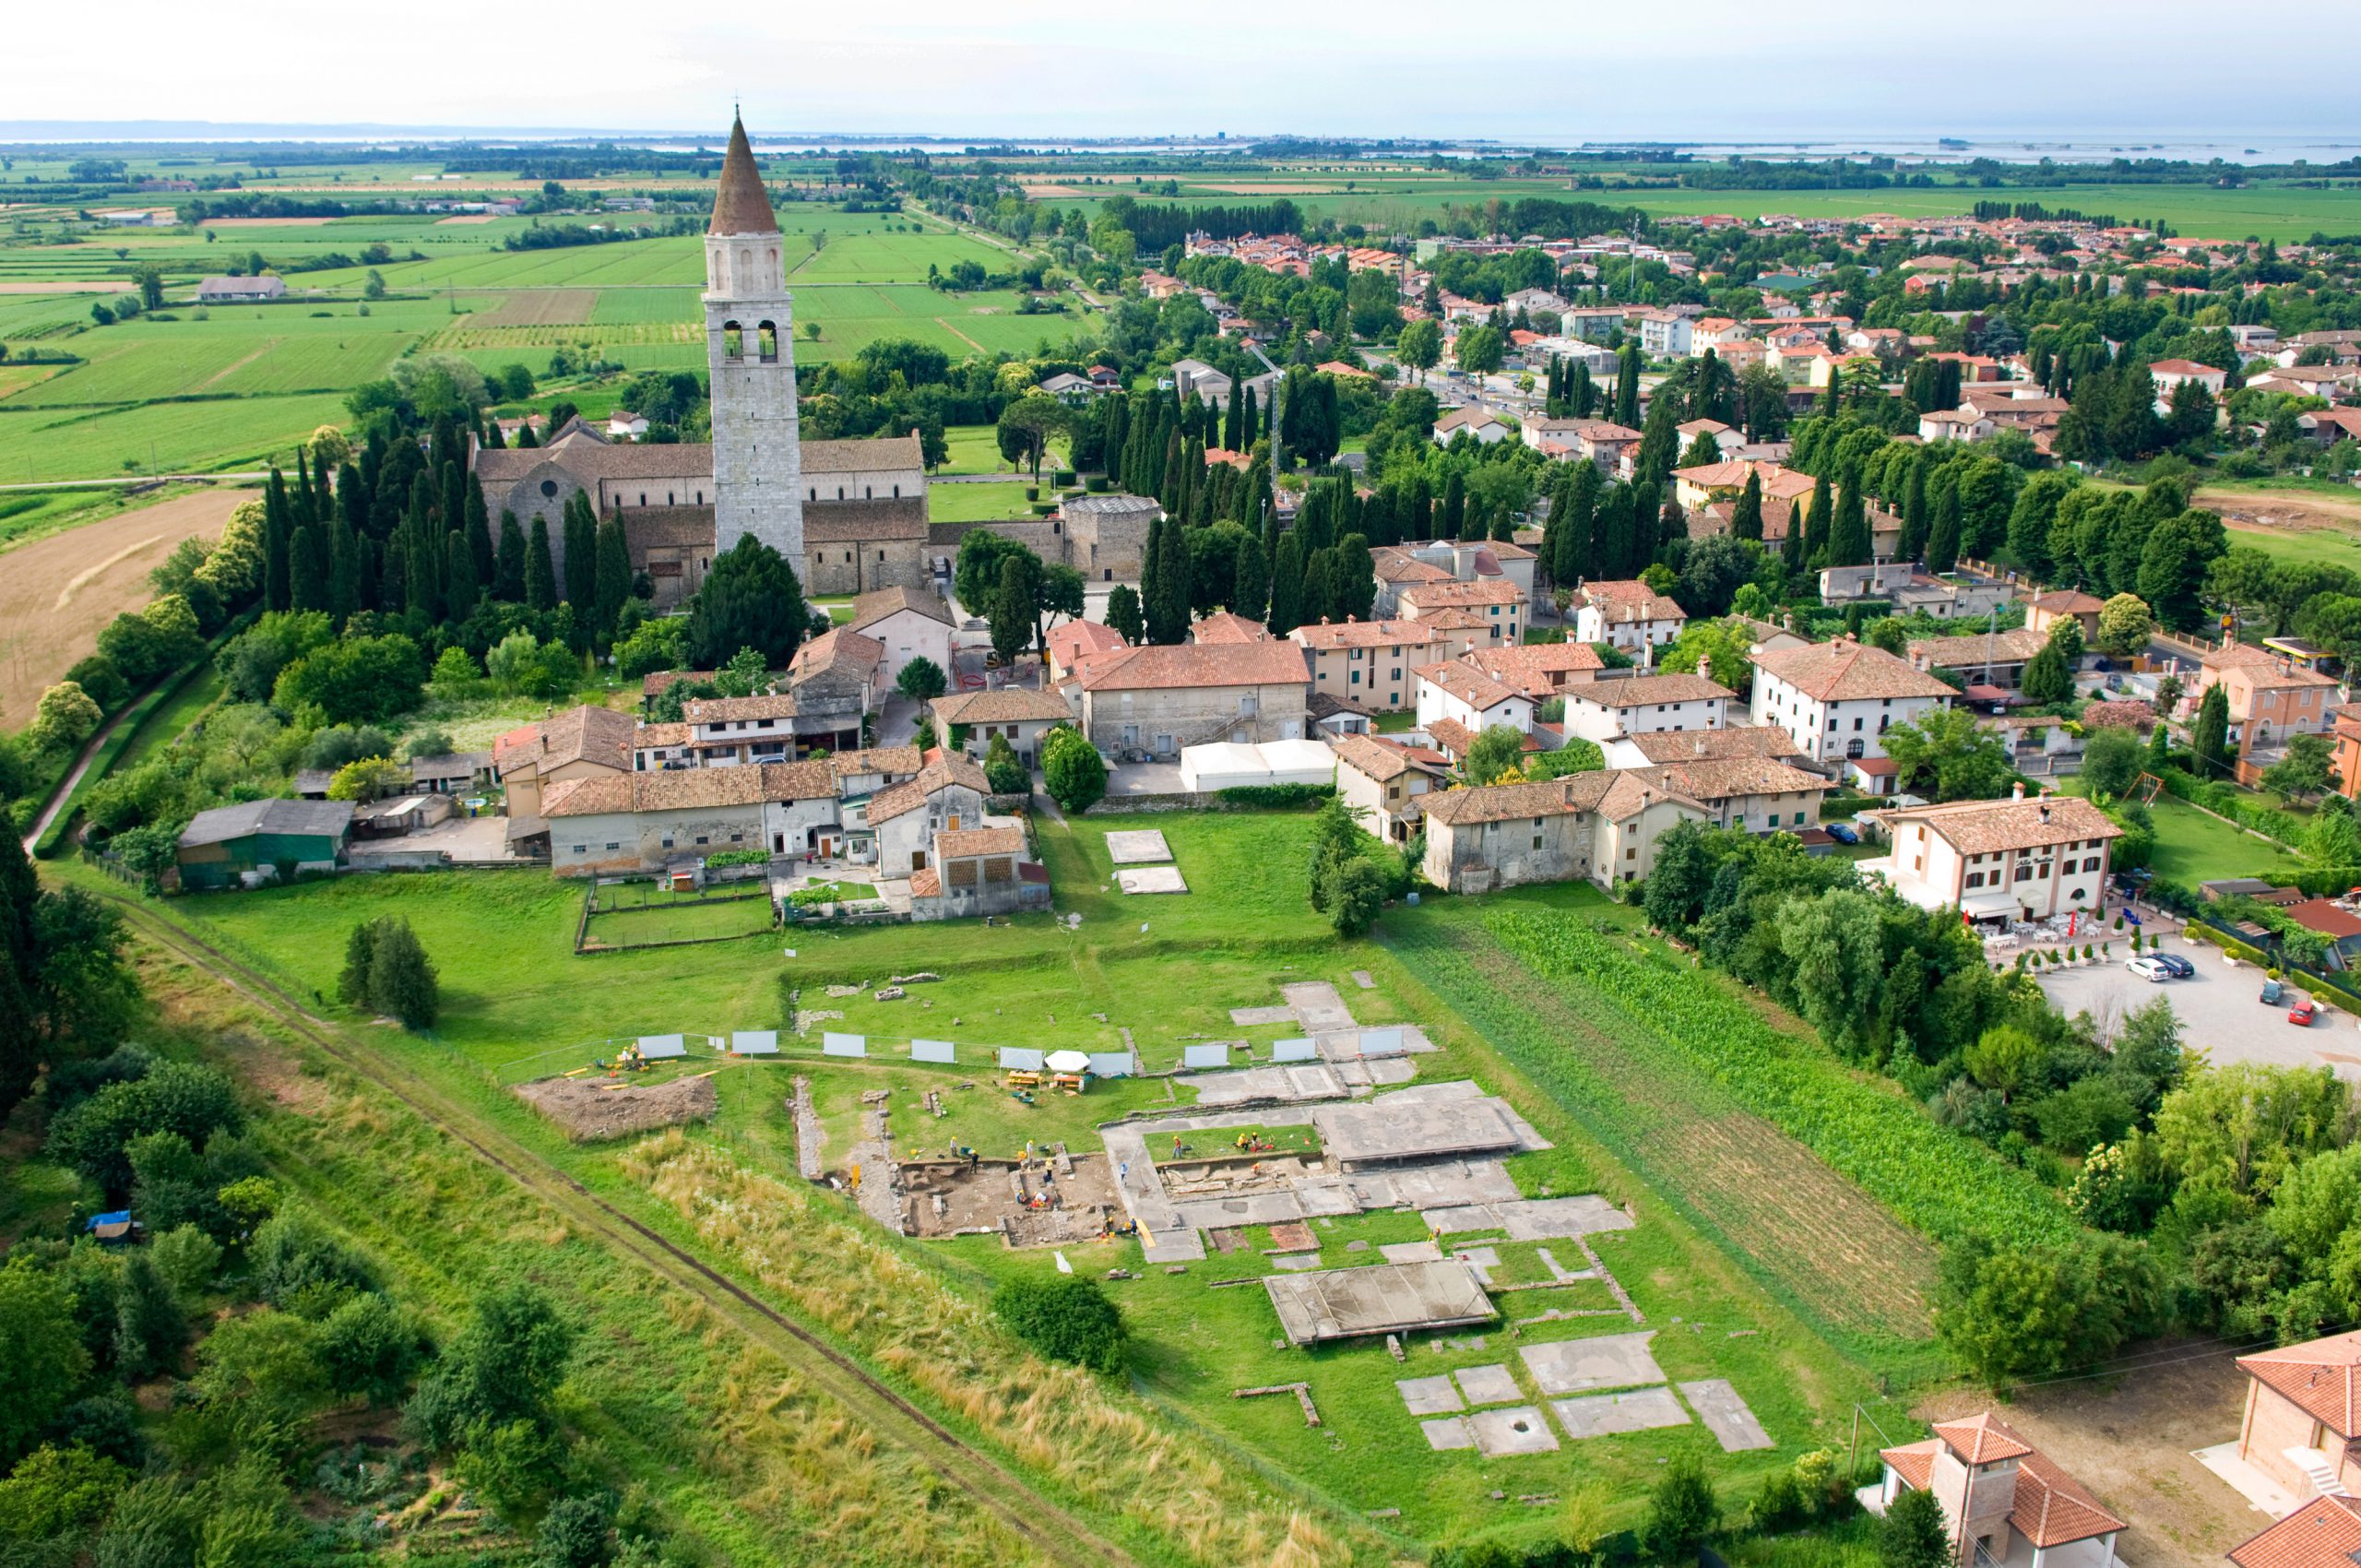 Scavi romani ad Aquileia - un'emozionante escursione in vacanza in bicicletta